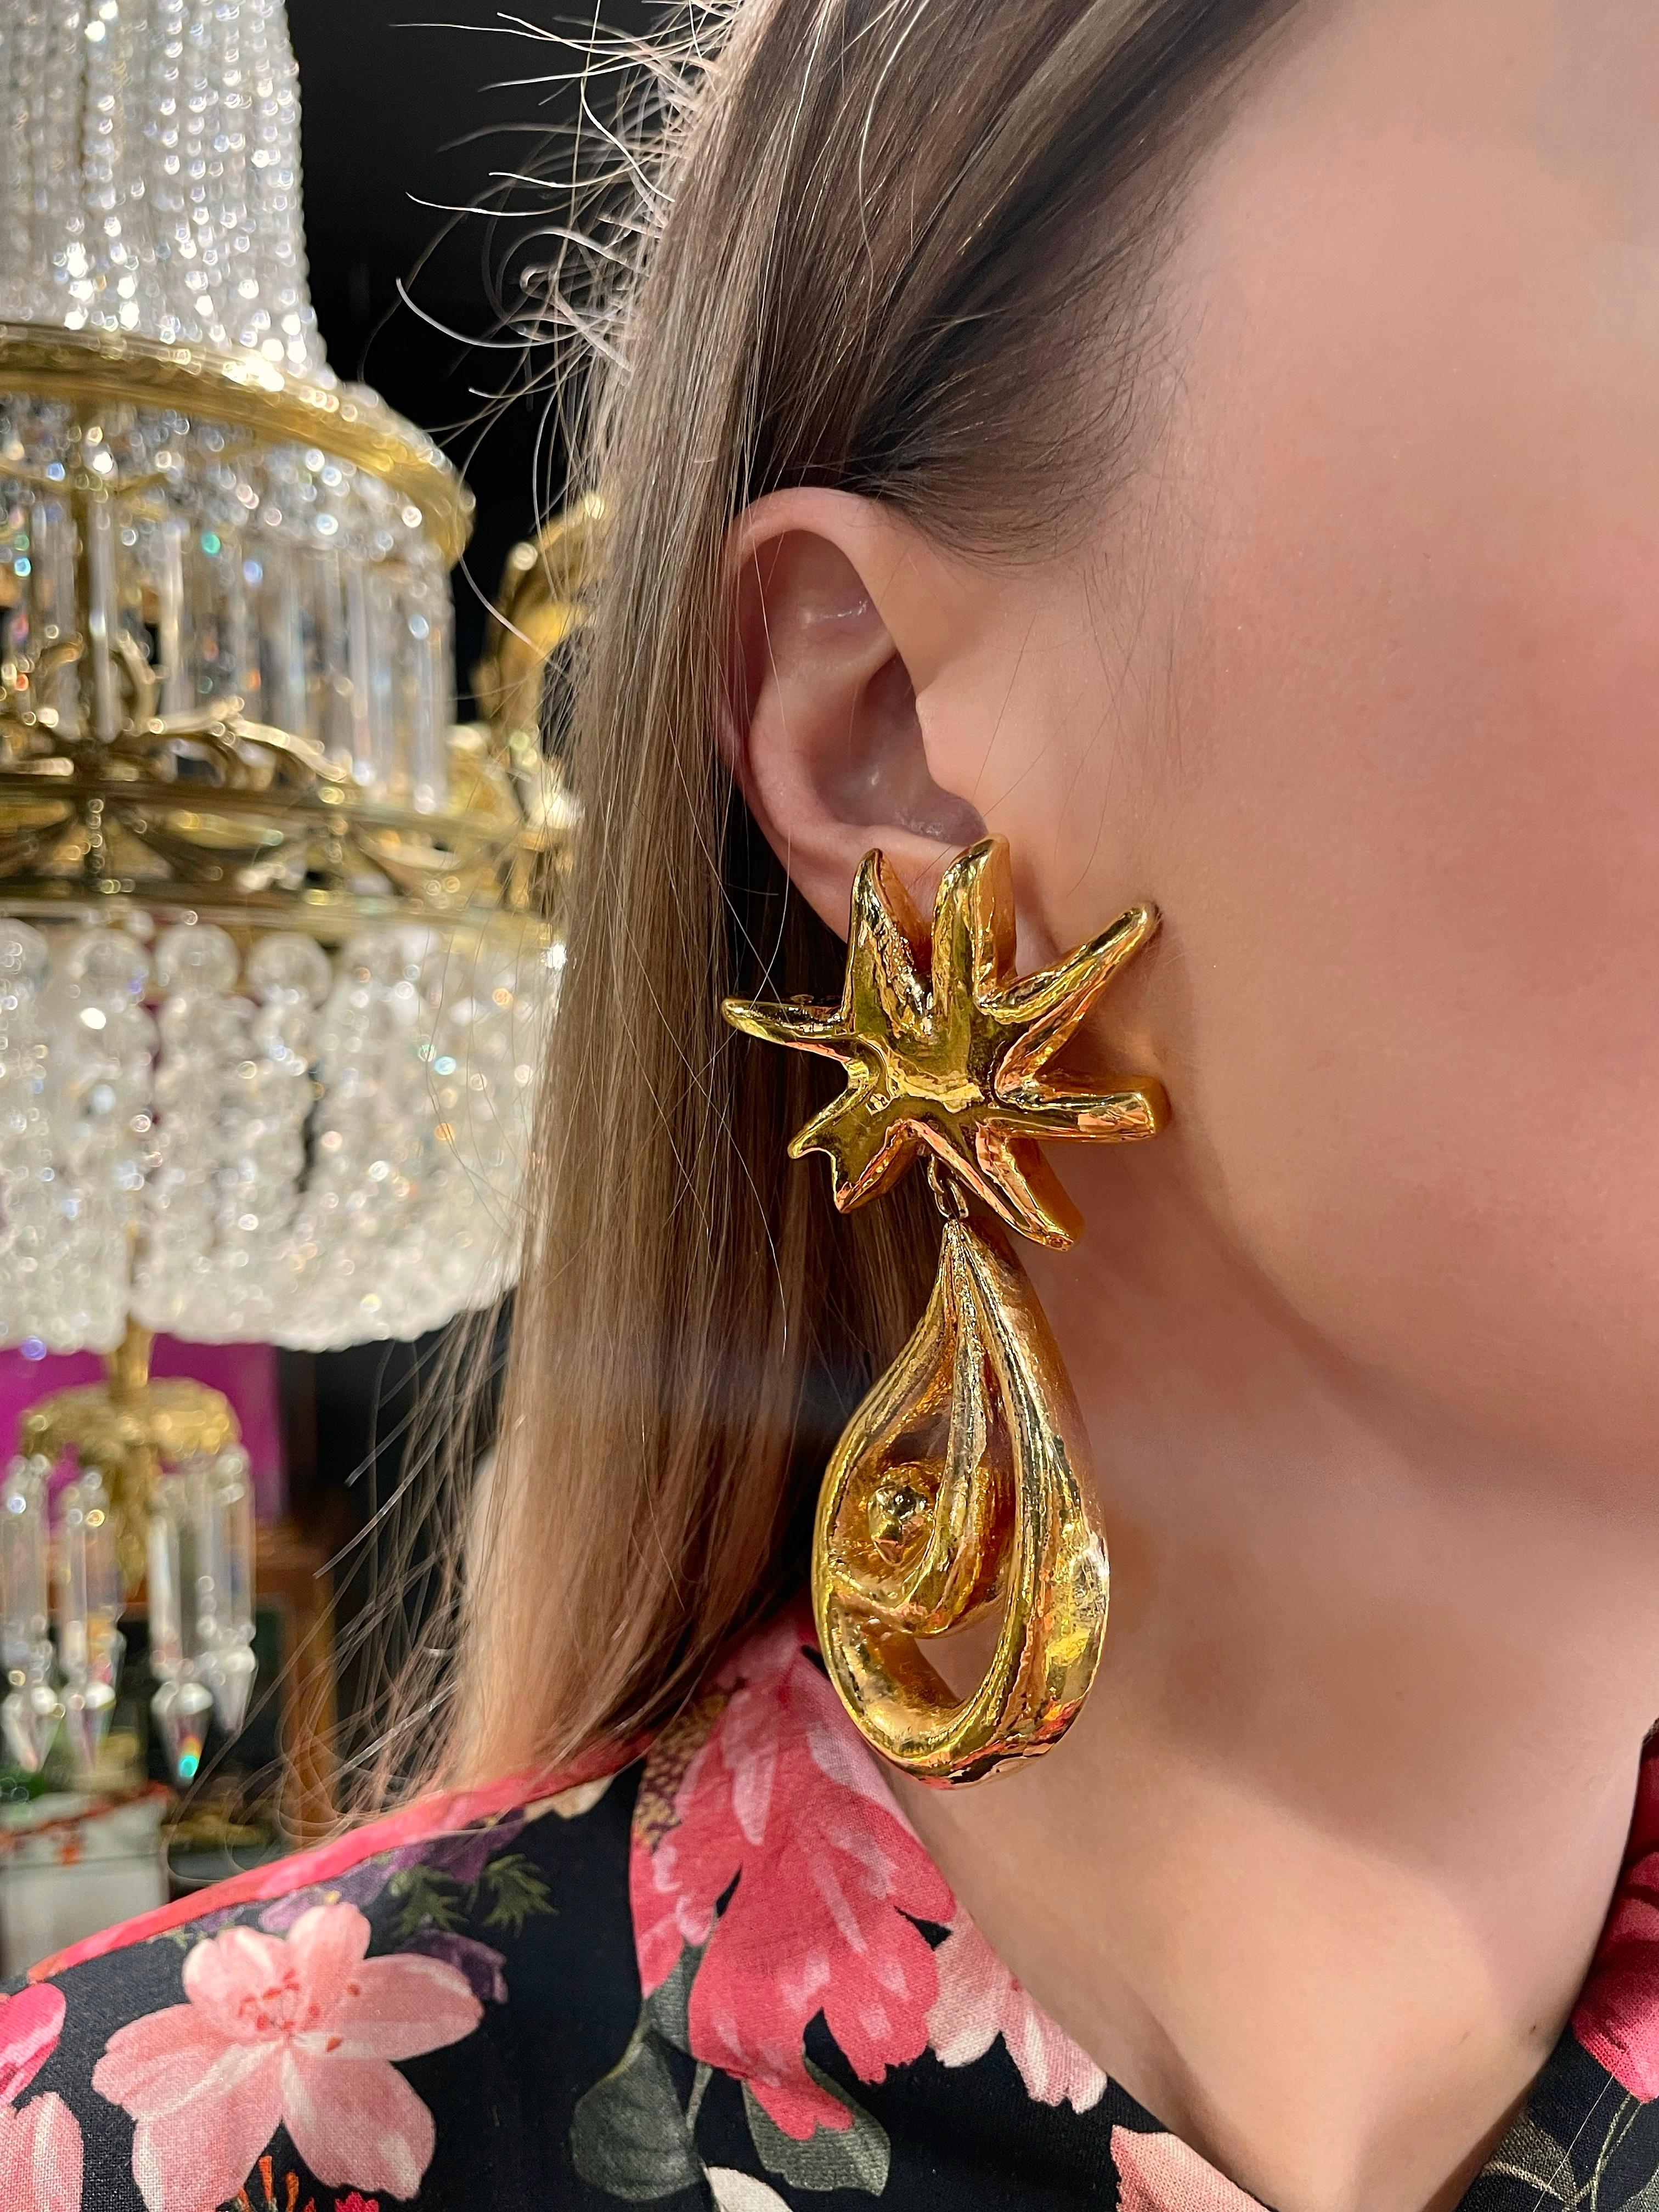 Il s'agit d'une paire de boucles d'oreilles à clip en forme d'étoile, de couleur dorée. Il a été conçu par Christian Lacroix dans les années 1990. 

La pièce est plaquée or. Massive mais légère. Très élégant.

Signé : 